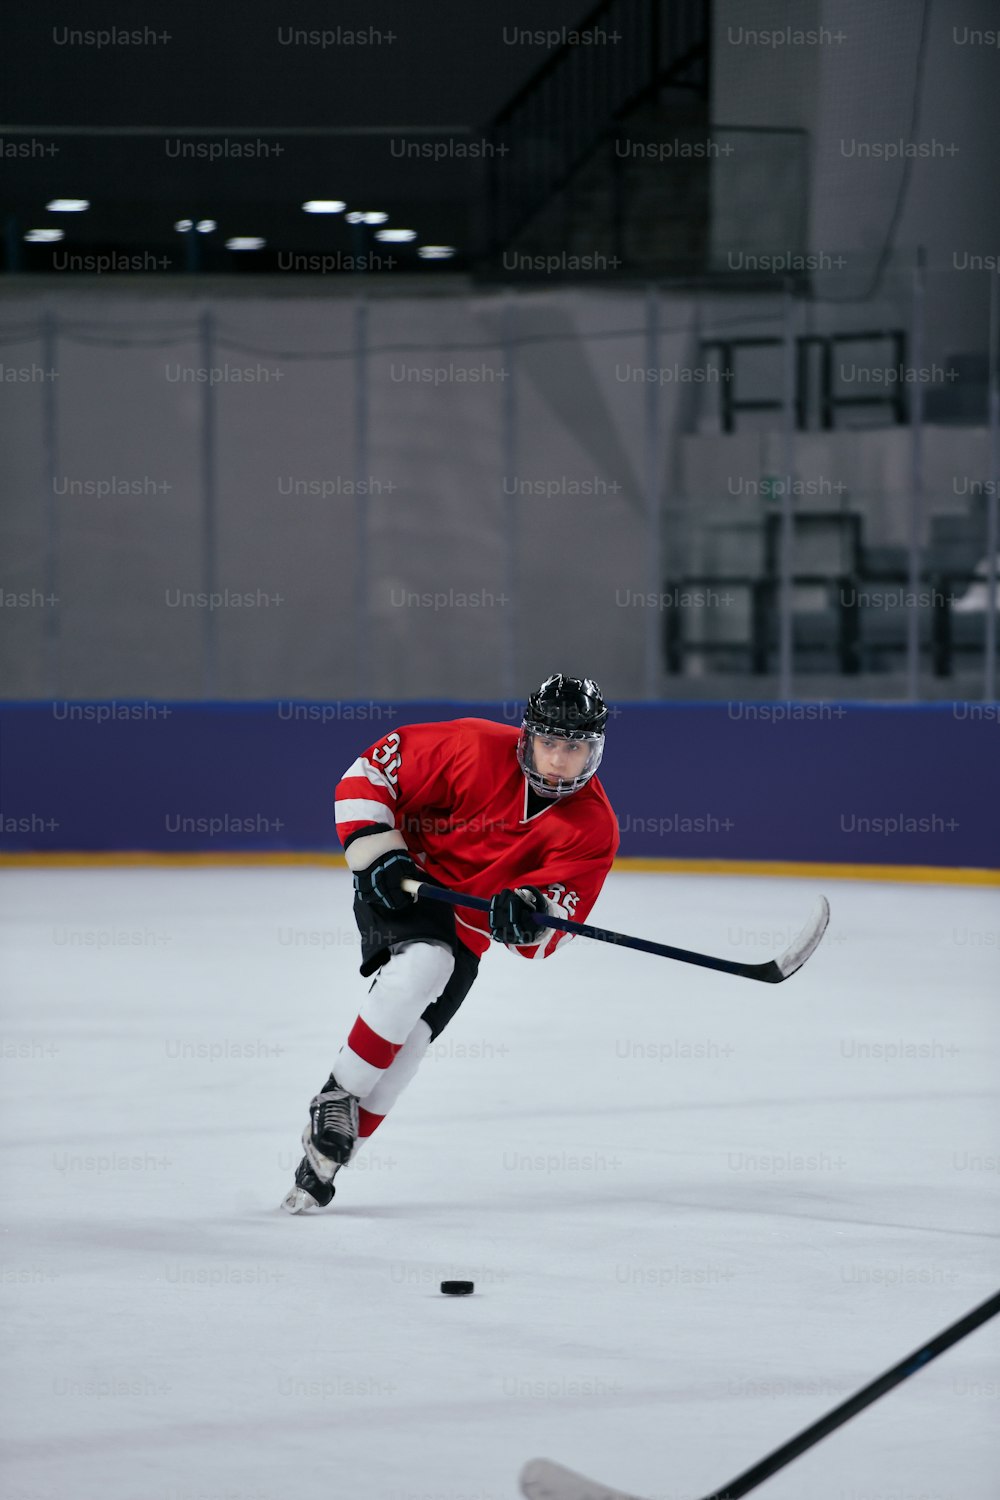 Un homme portant un chandail rouge joue au hockey